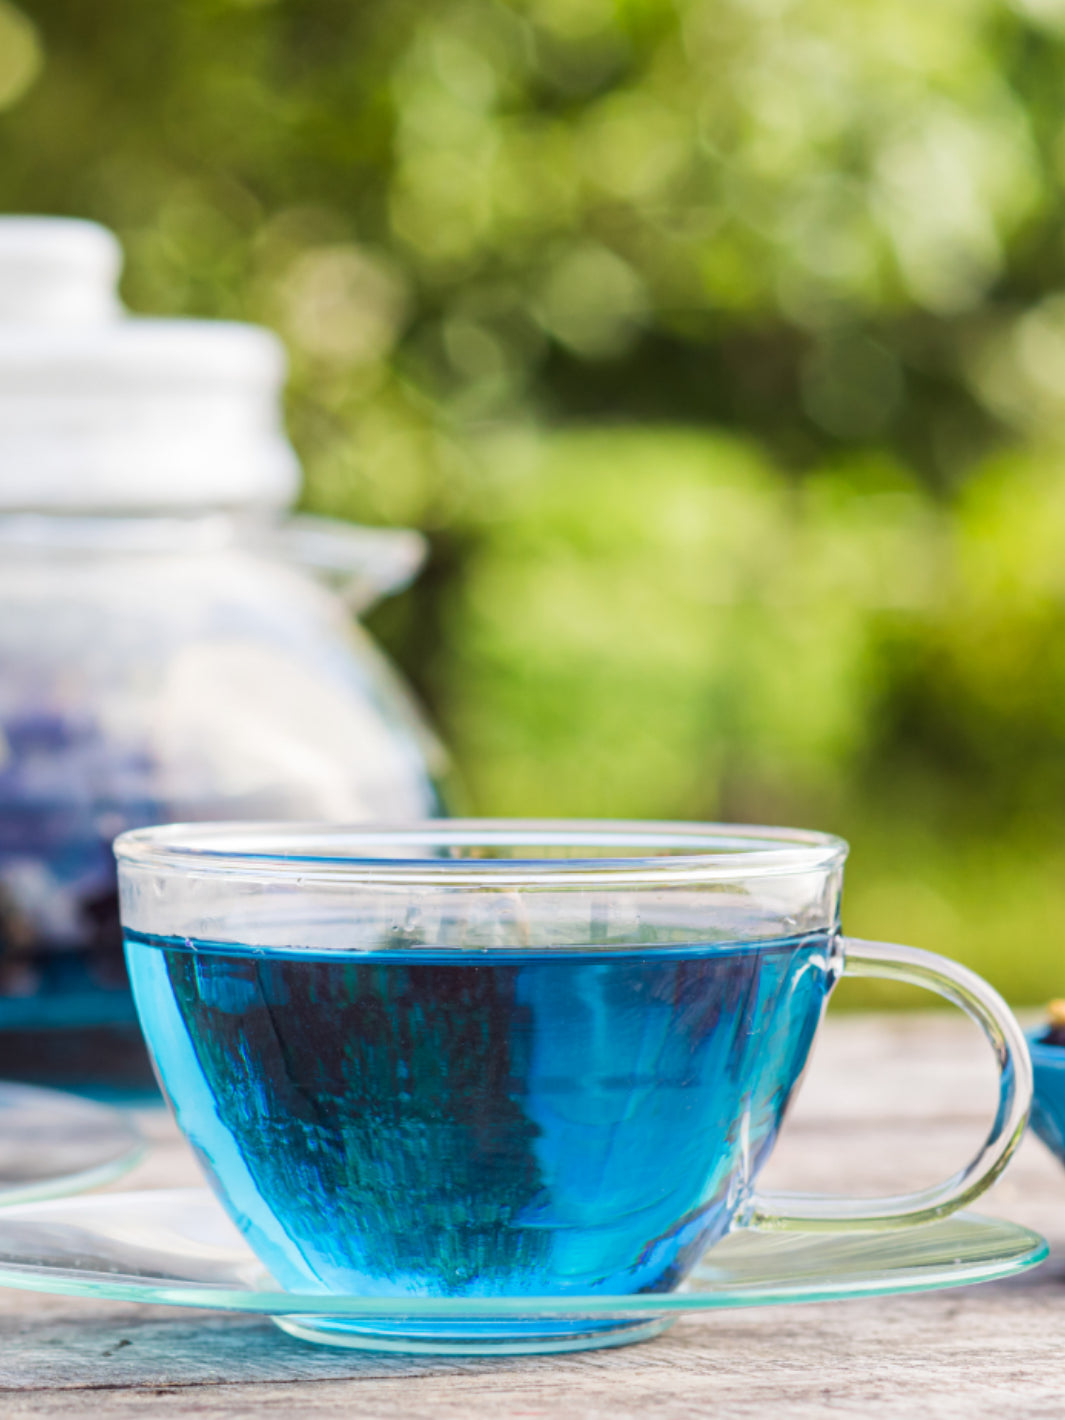 Tasse à thé en verre transparent + soucoupe (-20%) – Namsaa